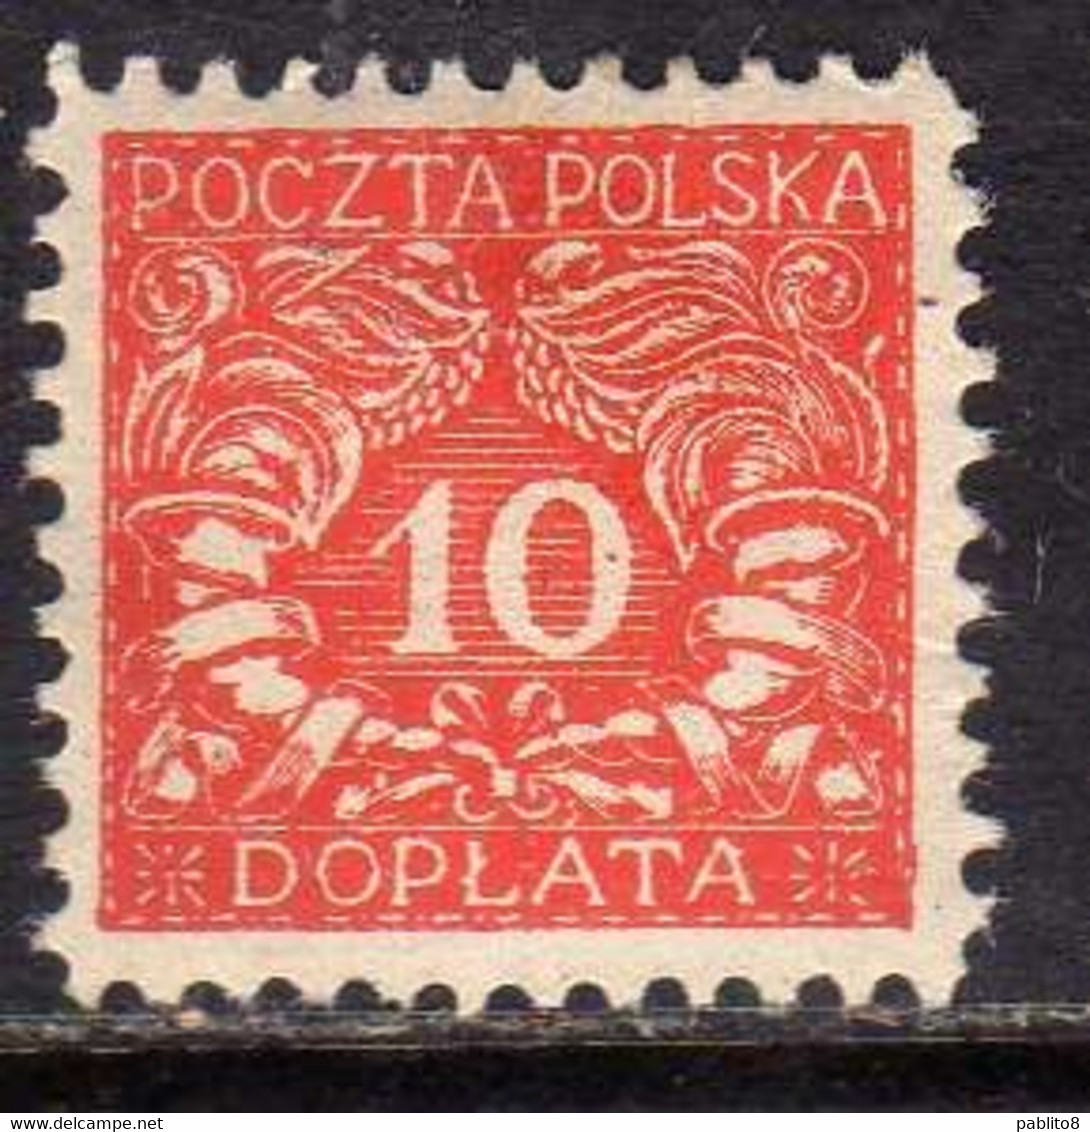 POLONIA POLAND POLSKA 1919 POSTAGE DUE STAMPS SEGNATASSE TASSE TAXE 10f MH - Taxe